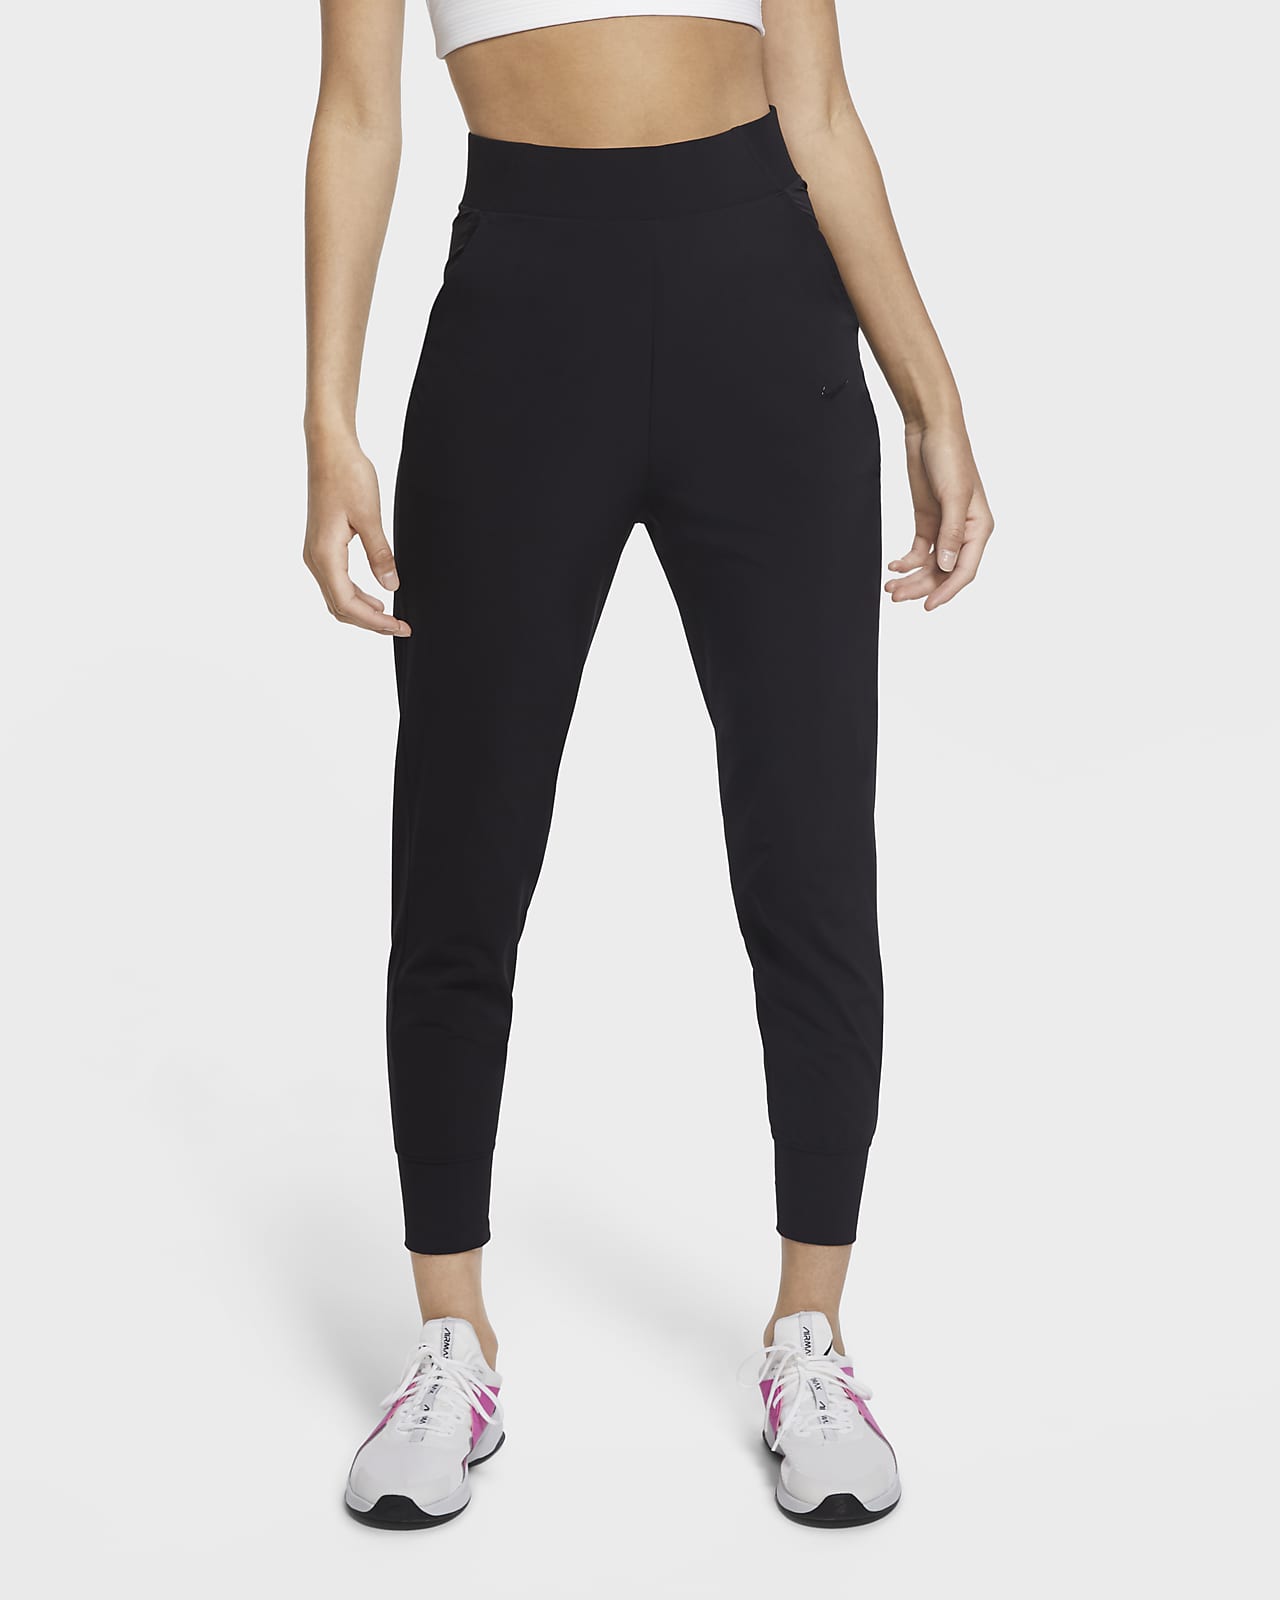 Dámské tréninkové kalhoty Nike Bliss Luxe